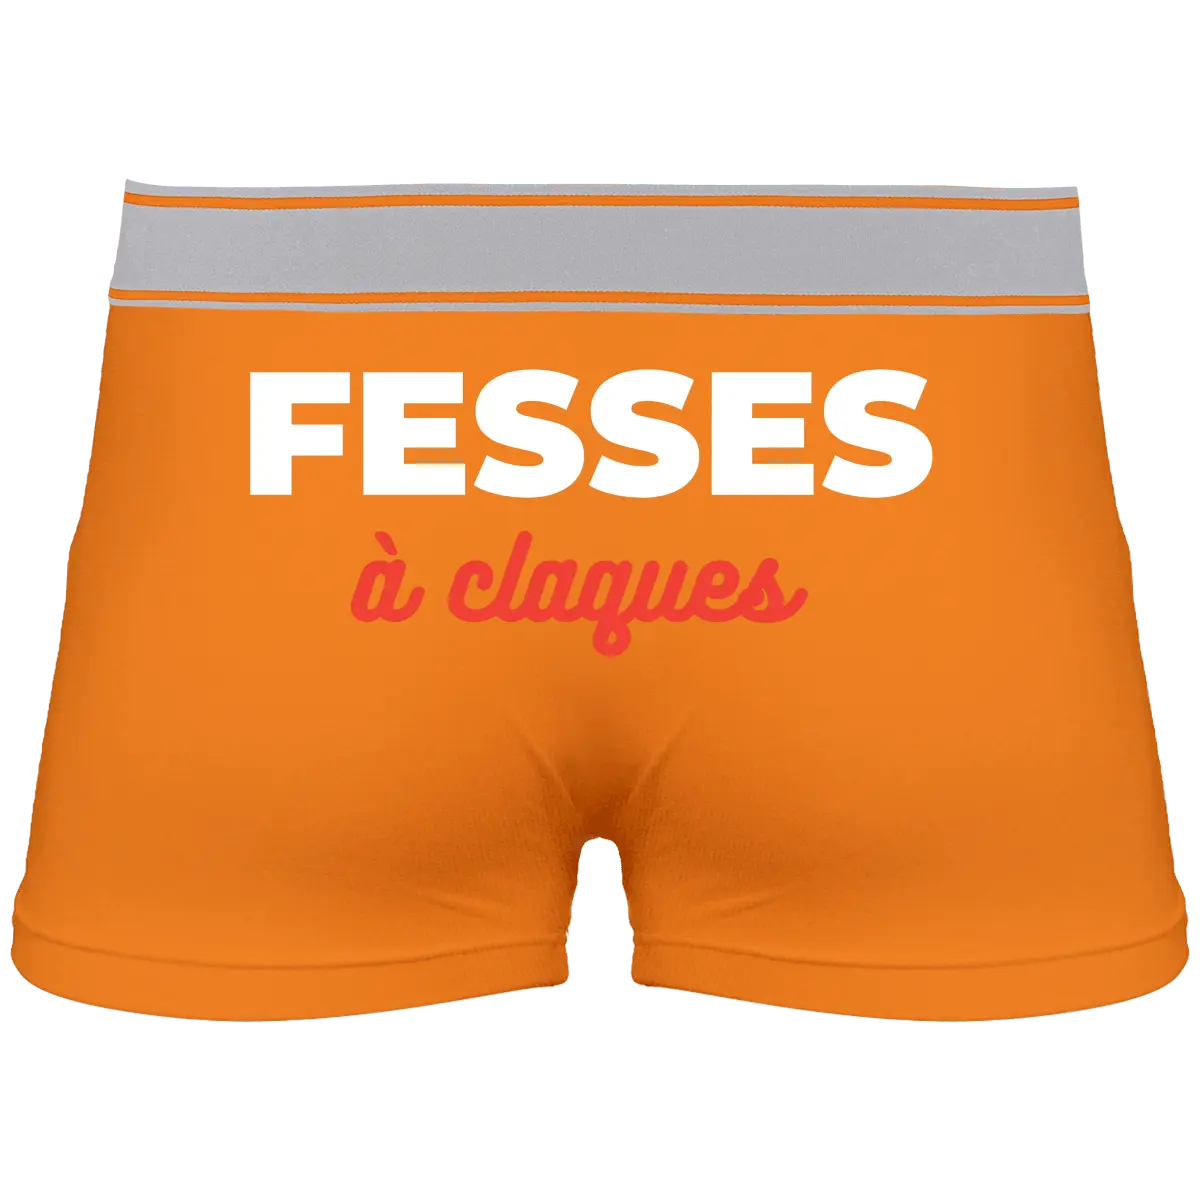 Caleçon "Fesses à claques" - French Humour